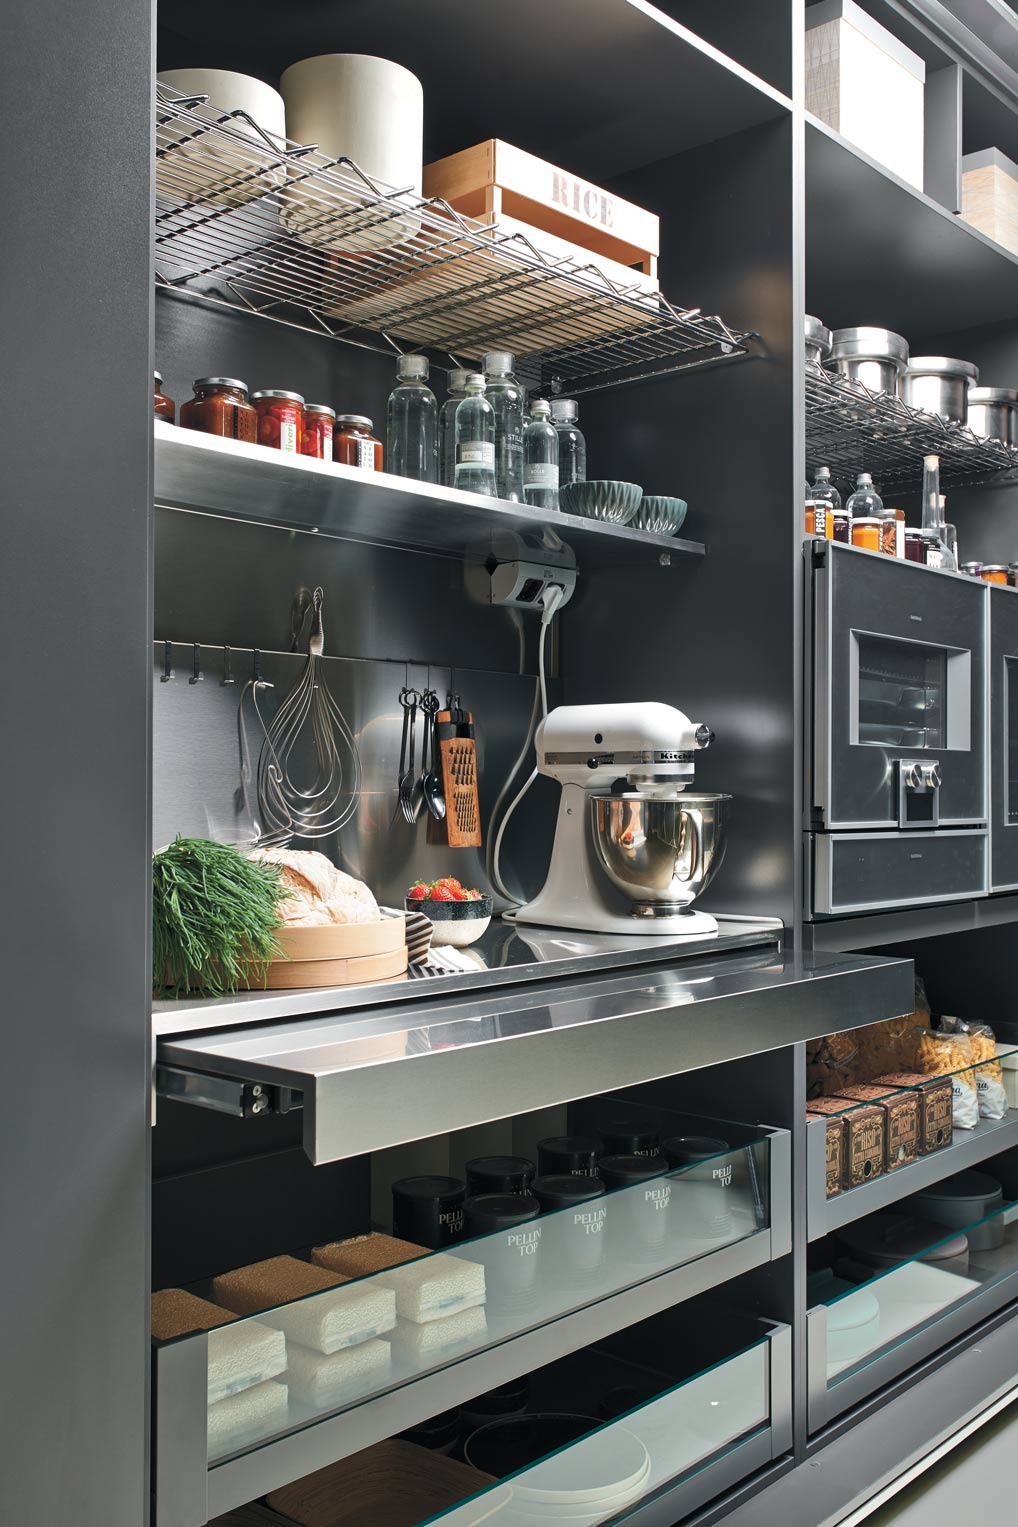 Luxury kitchen appliances